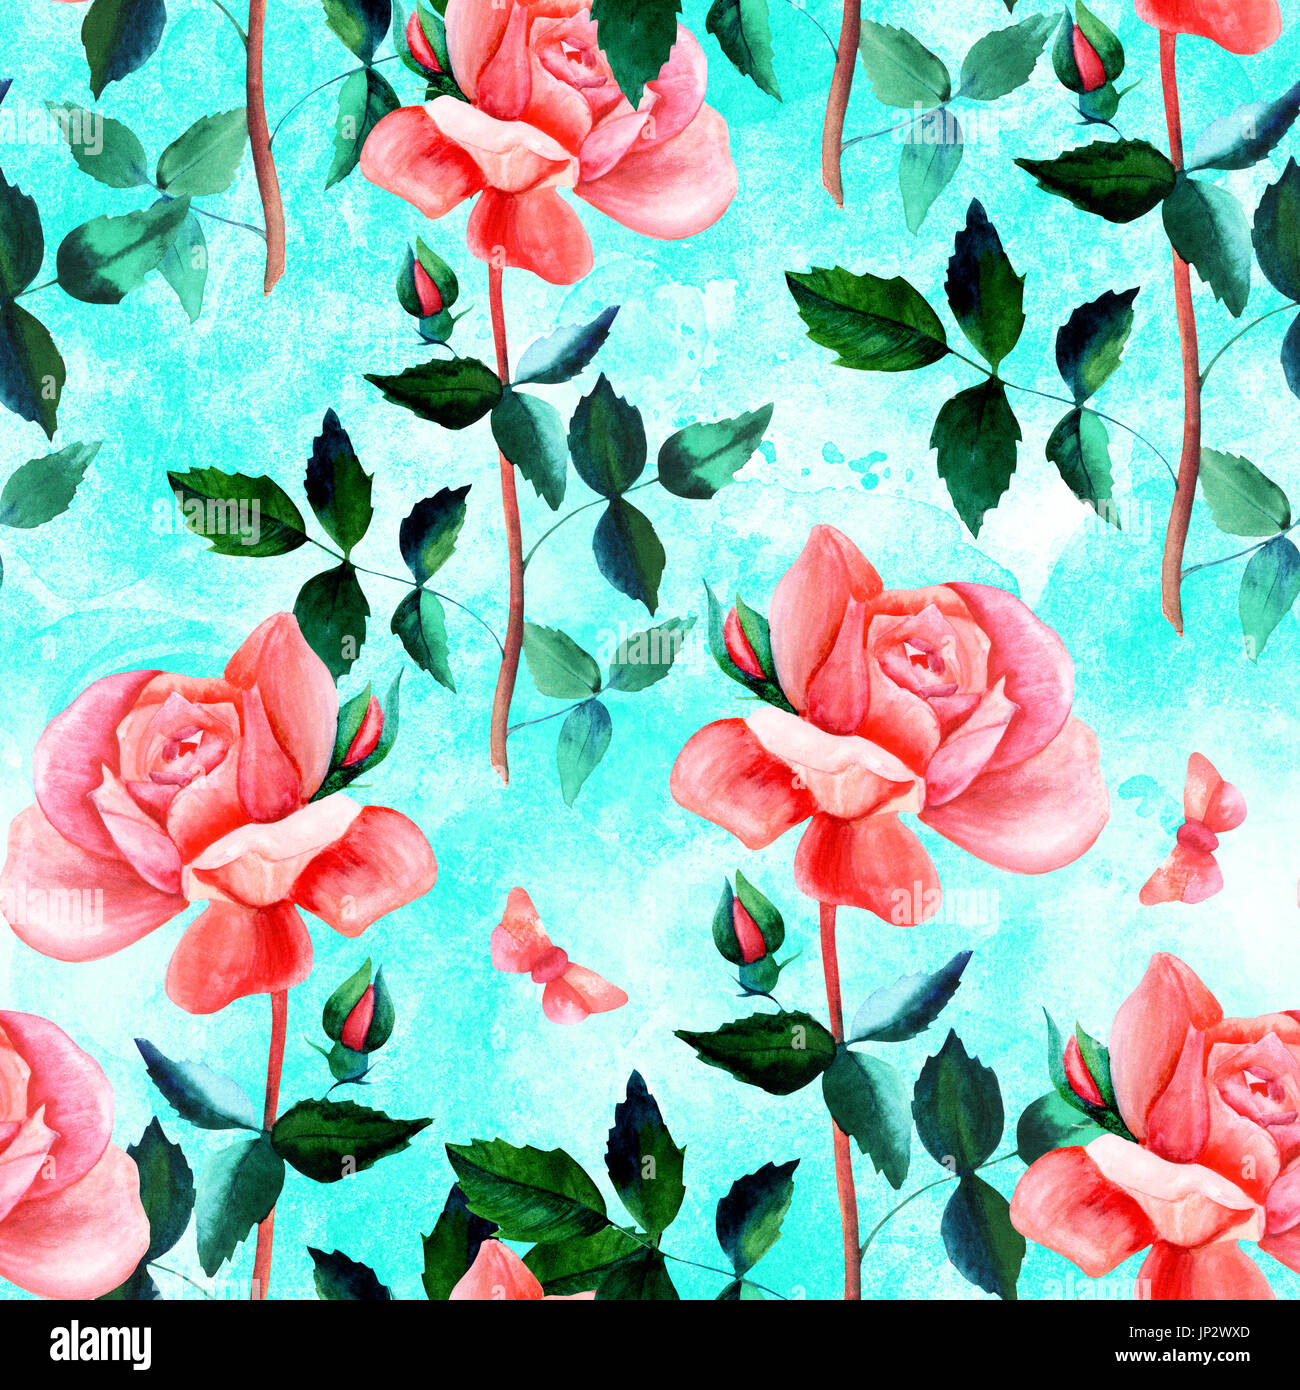 Eine nahtlose Hintergrundmuster mit einer Aquarell Zeichnung von einer roten rose Blume und Schmetterling, auf blau blaugrün, bemalte Hand im Stil des Vintage botan Stockfoto